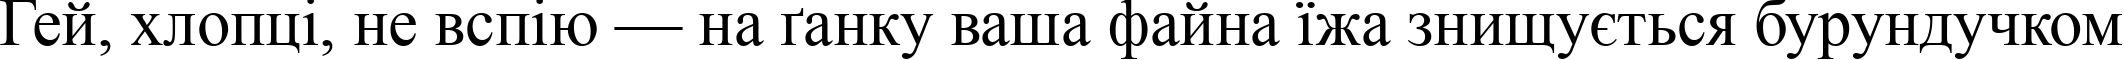 Пример написания шрифтом font239 текста на украинском